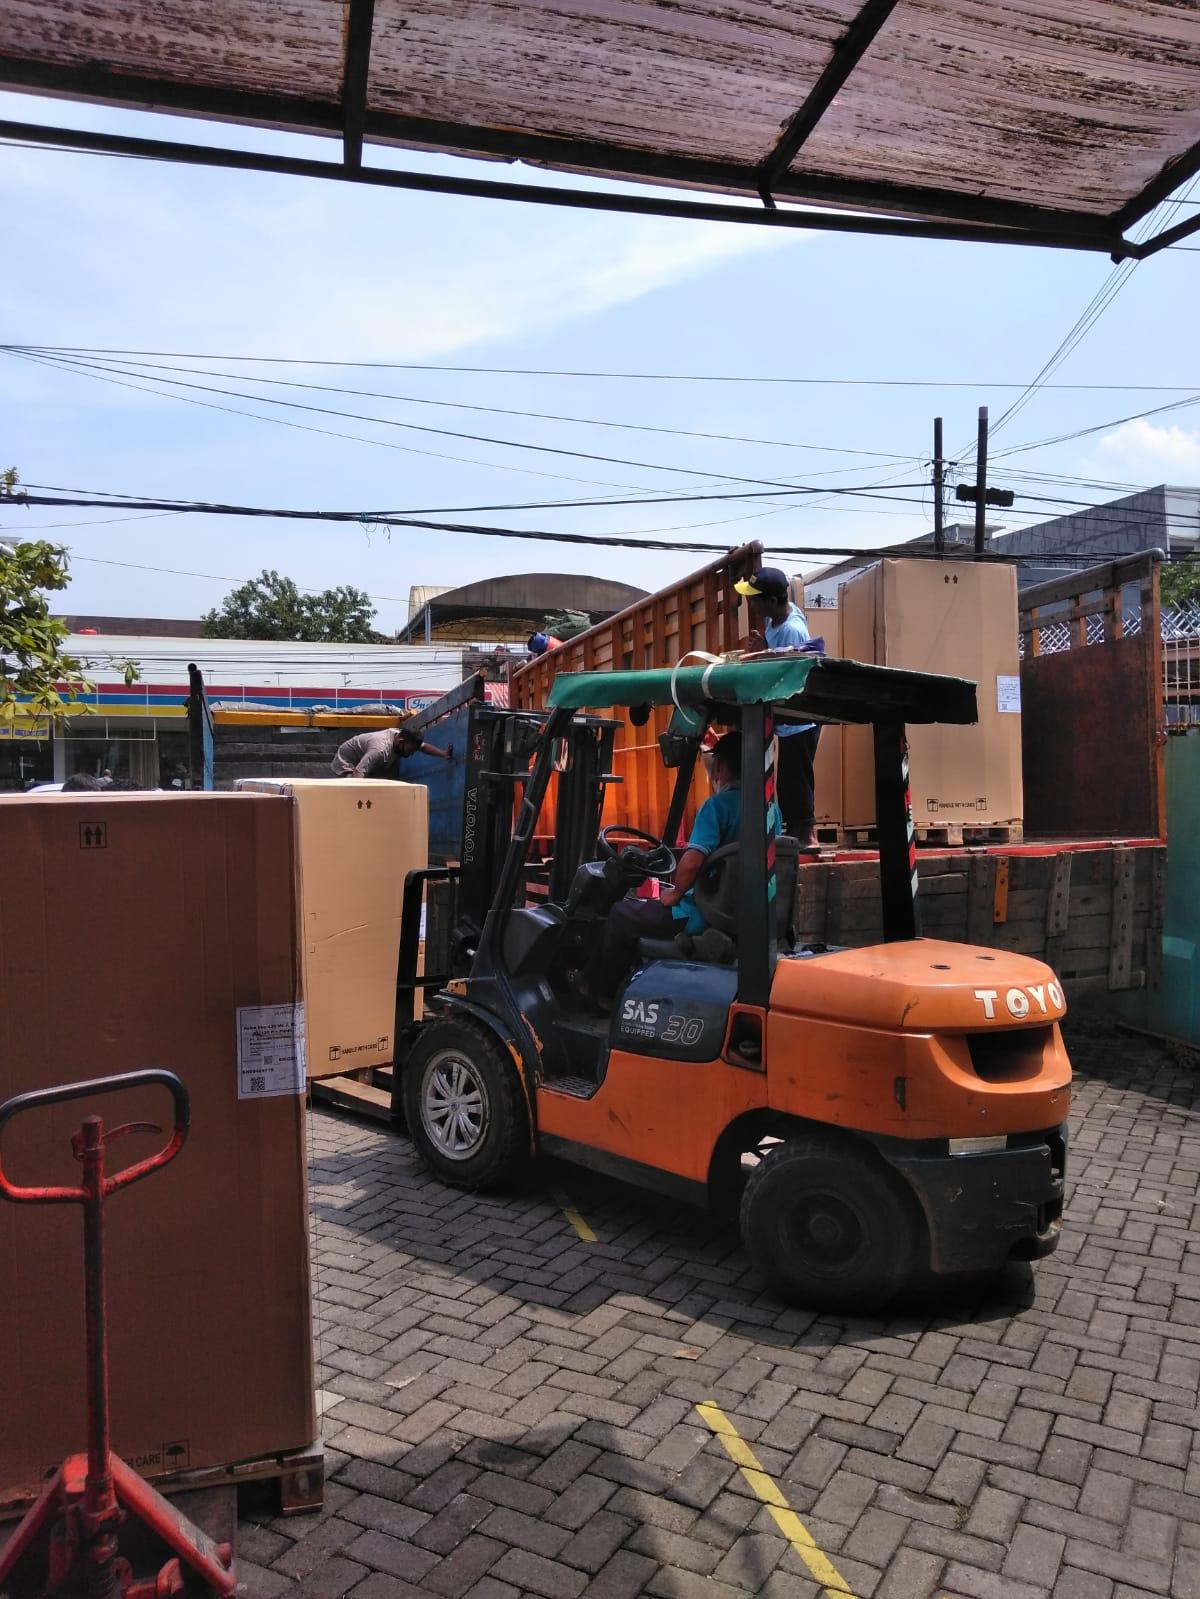 Forklift 3 Ton bongkar barang, Rental Forklift Semarang, Sewa Forklift Semarang, Sewa Forklift 3 Ton bongkar barang Semarang, Rental Forklift 3 Ton bongkar barang Semarang, Persewaan Forklift 3 Ton bongkar barang Semarang